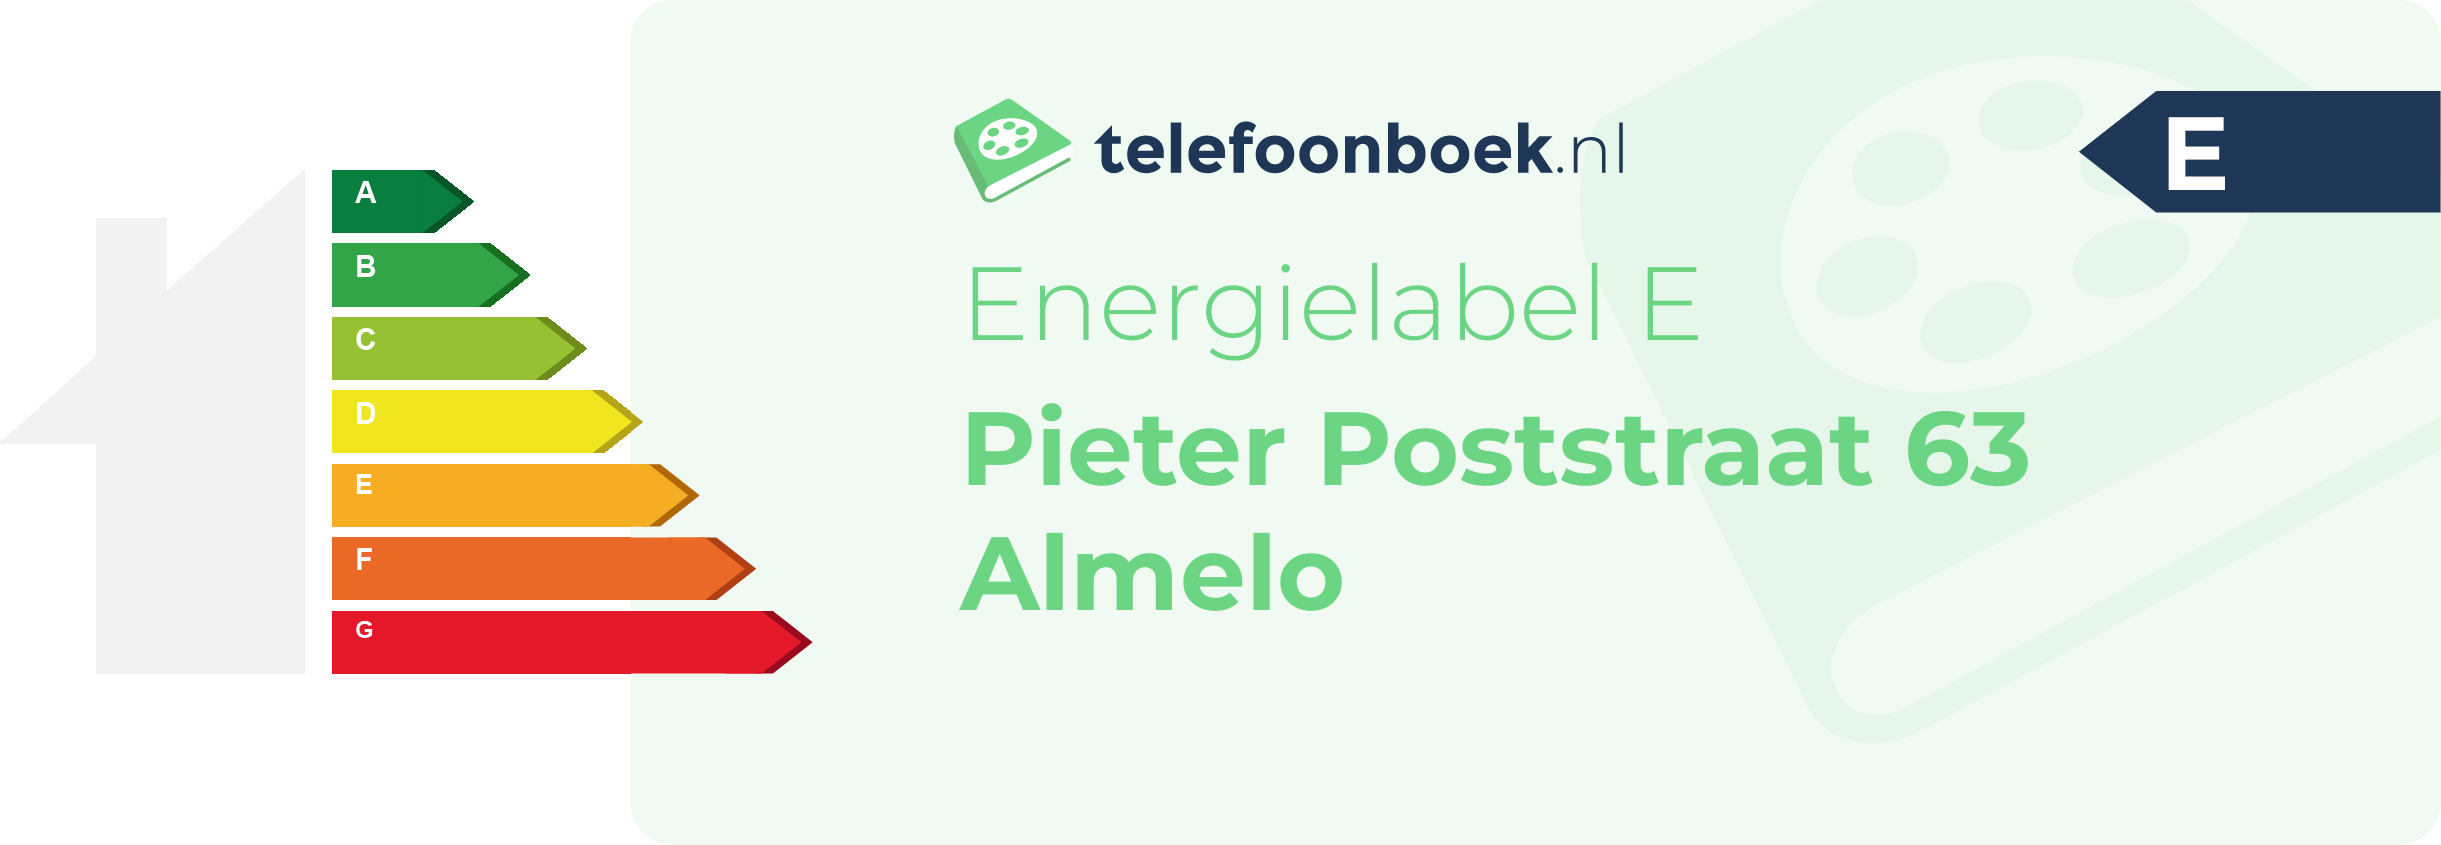 Energielabel Pieter Poststraat 63 Almelo